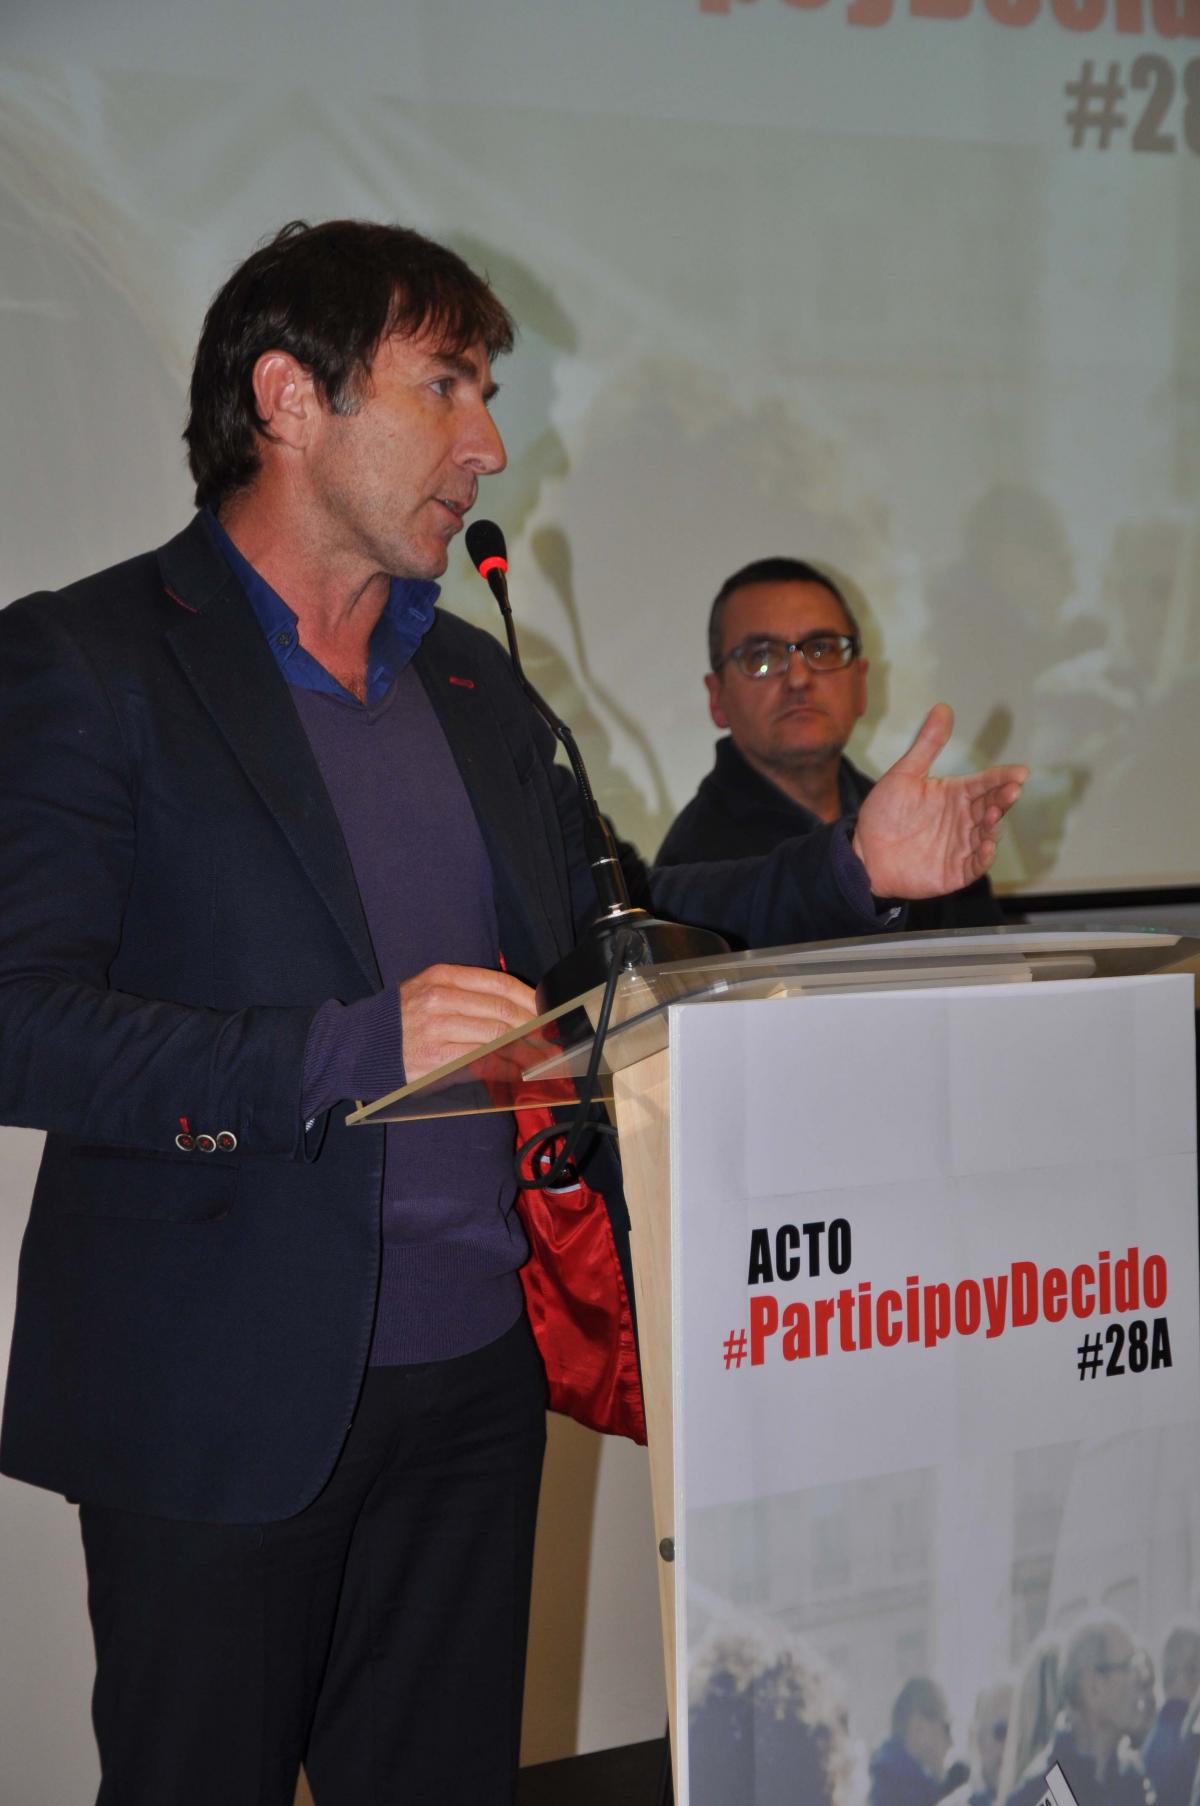 El actor Antonio de la Torre tambin particip y apoy el acto